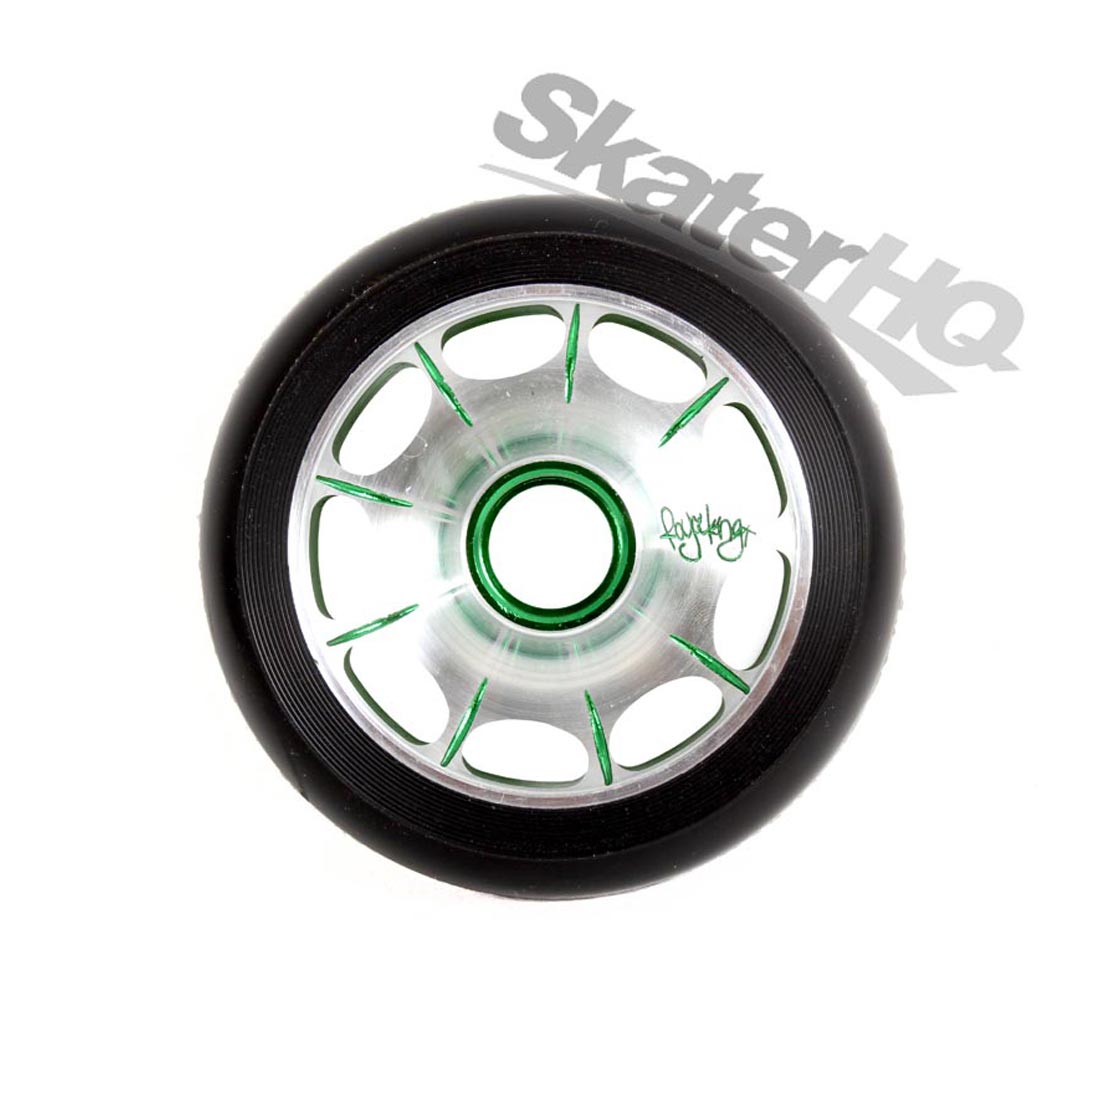 Root Industries Royce King Sig Wheel 110mm - Black/Green Scooter Wheels